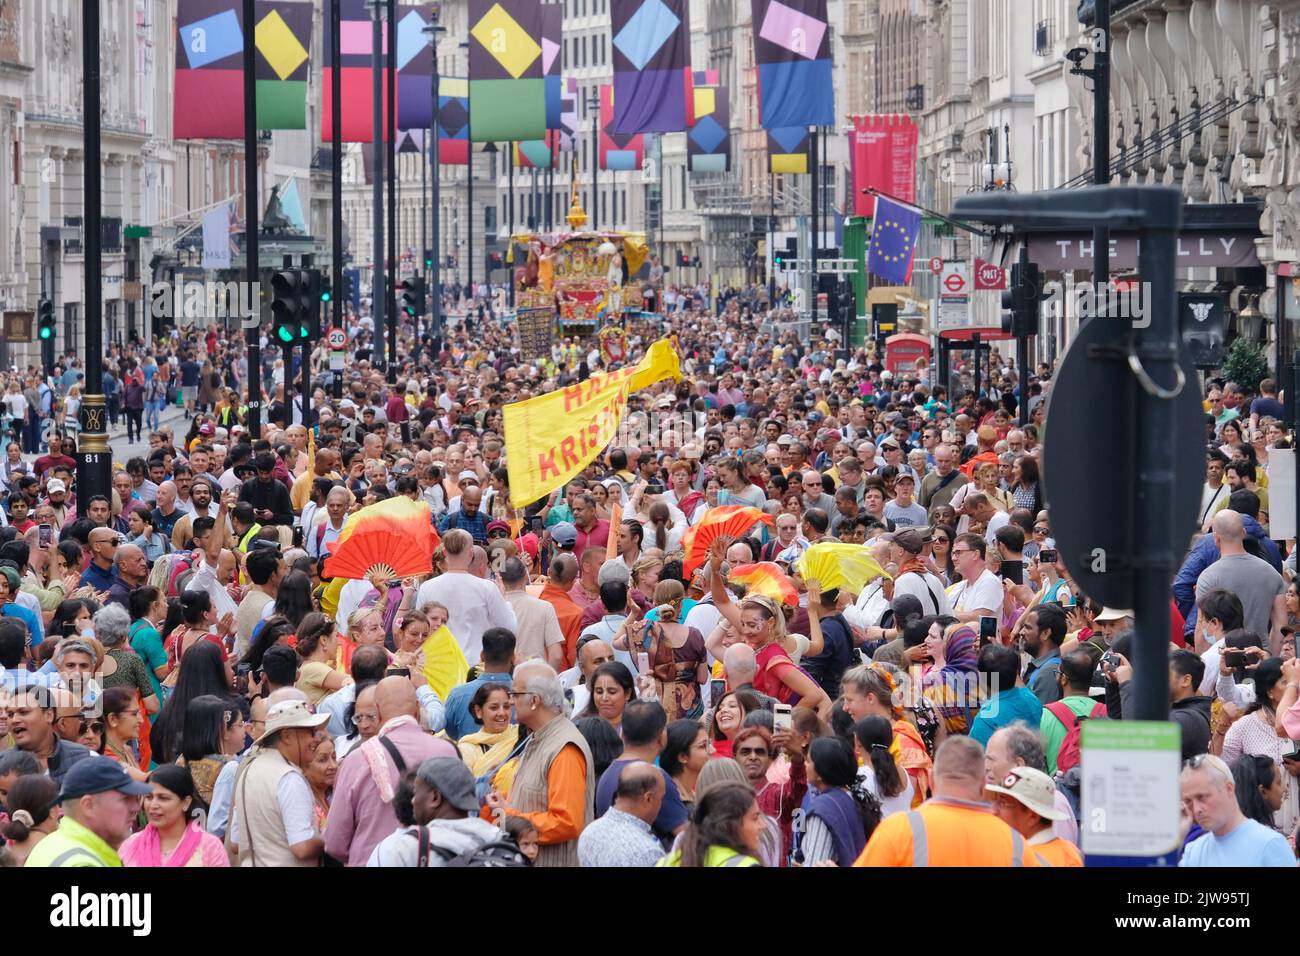 Londres, Royaume-Uni, 4th septembre 2022. Des centaines de dévotés de Hare Krishna dansaient dans une procession colorée à côté d'un char géant tiré par des cordes. Les festivités se sont poursuivies à Trafalgar Square où les clients ont apprécié les spectacles. Crédit : onzième heure Photographie/Alamy Live News Banque D'Images